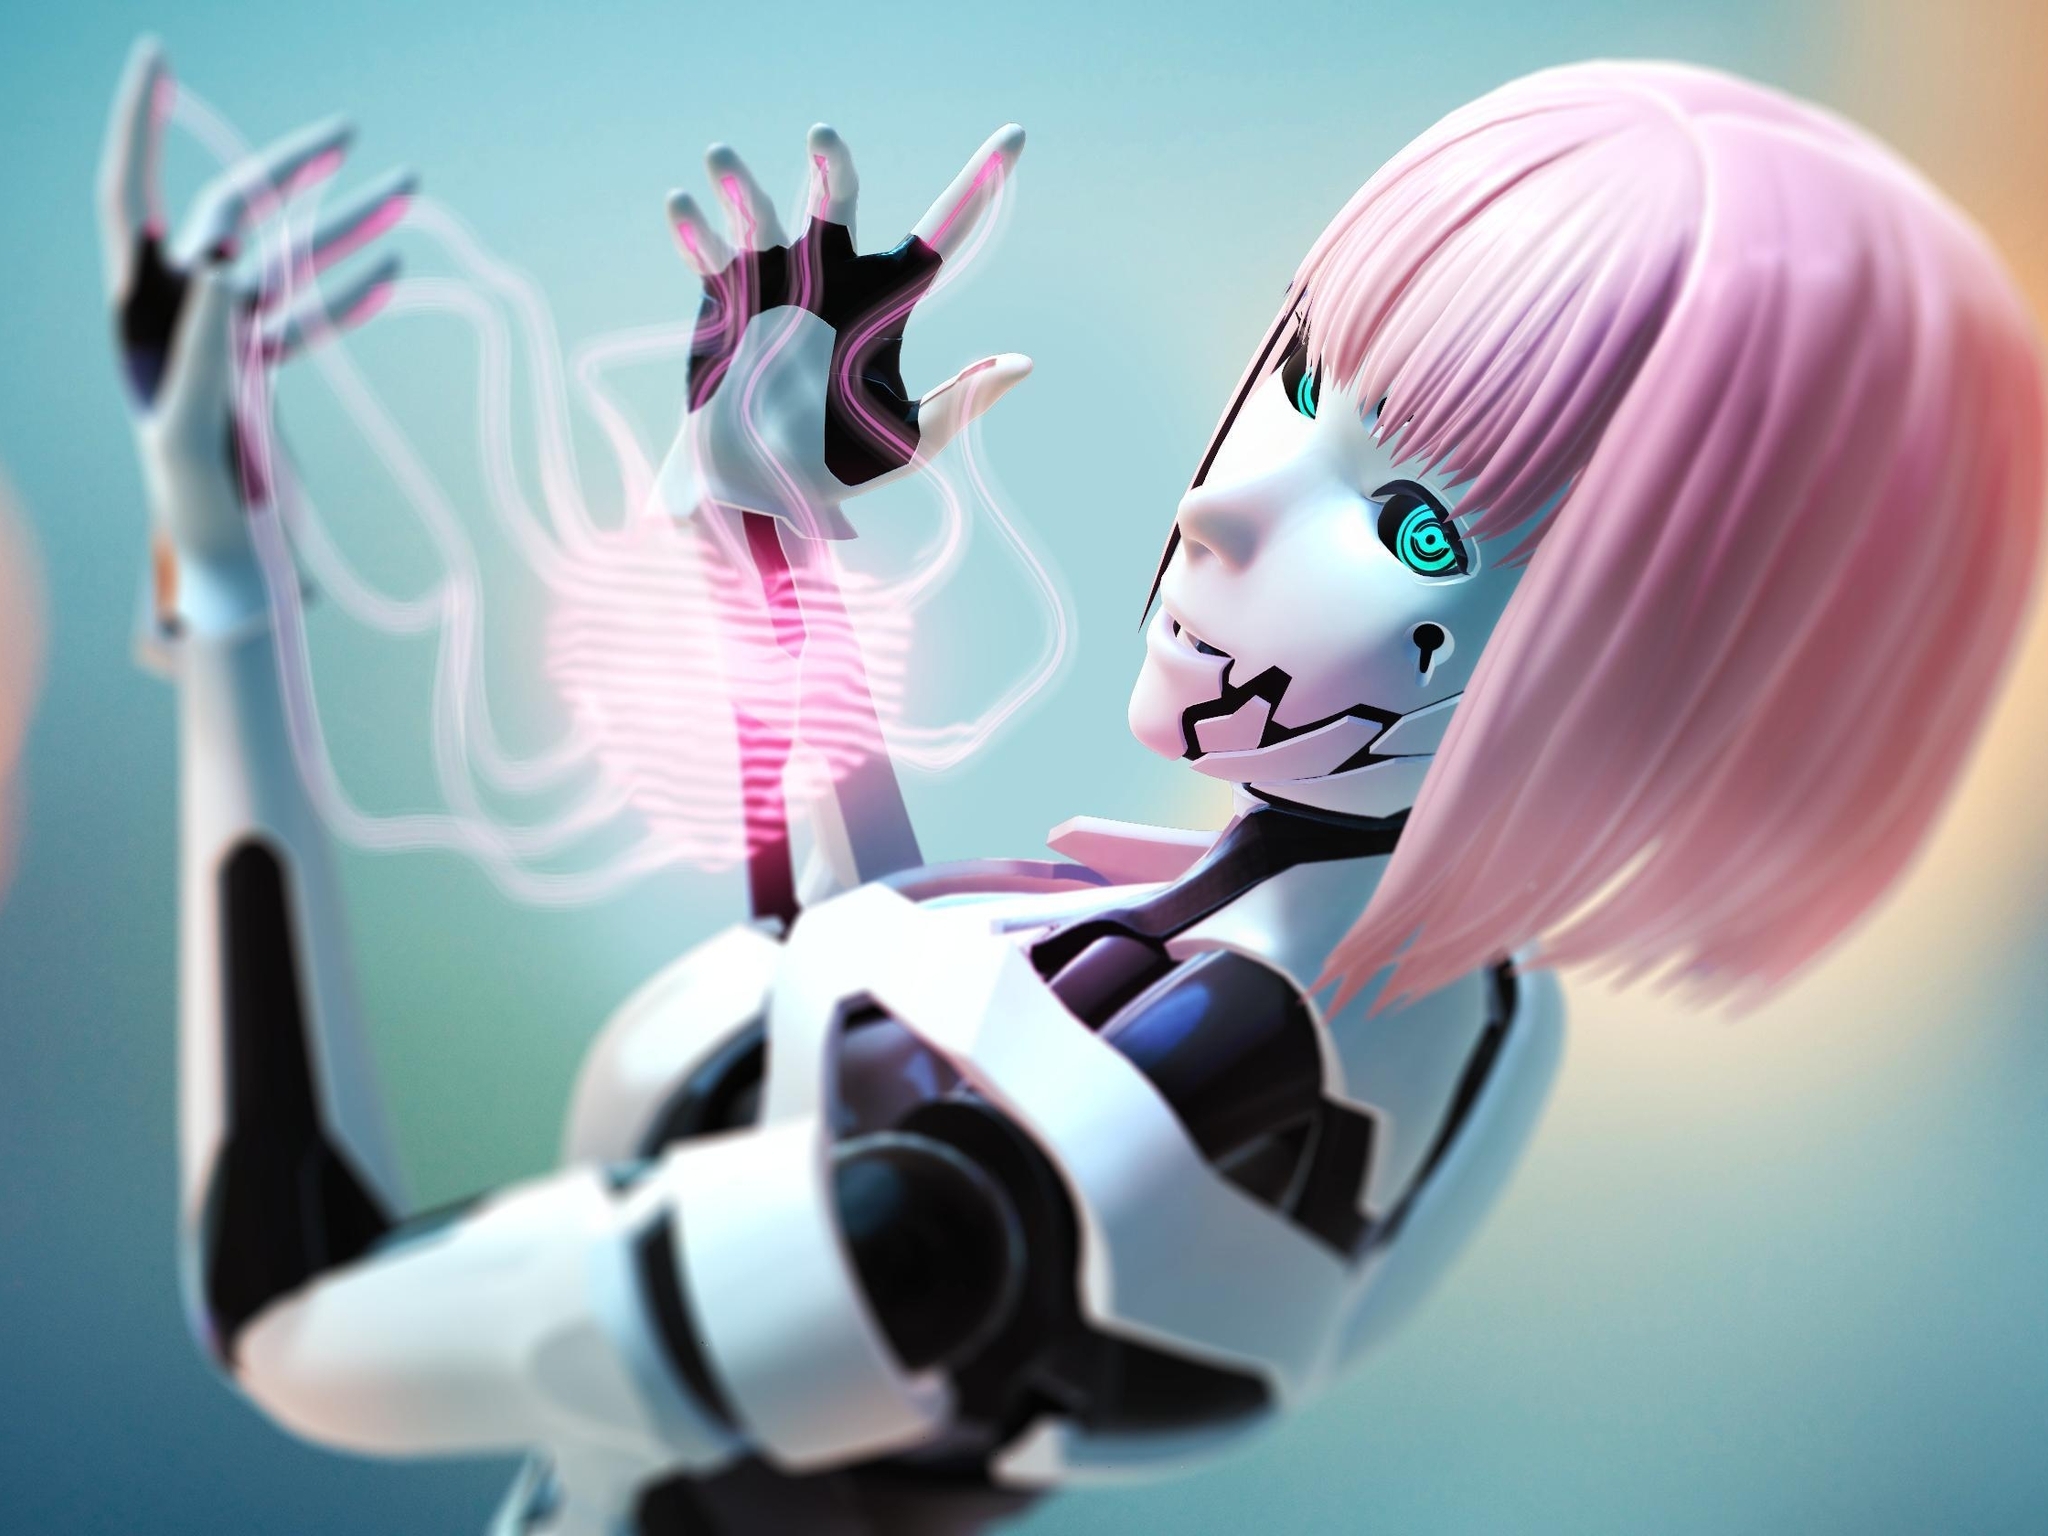 Картинка: Девушка, робот, 3D, розовые волосы